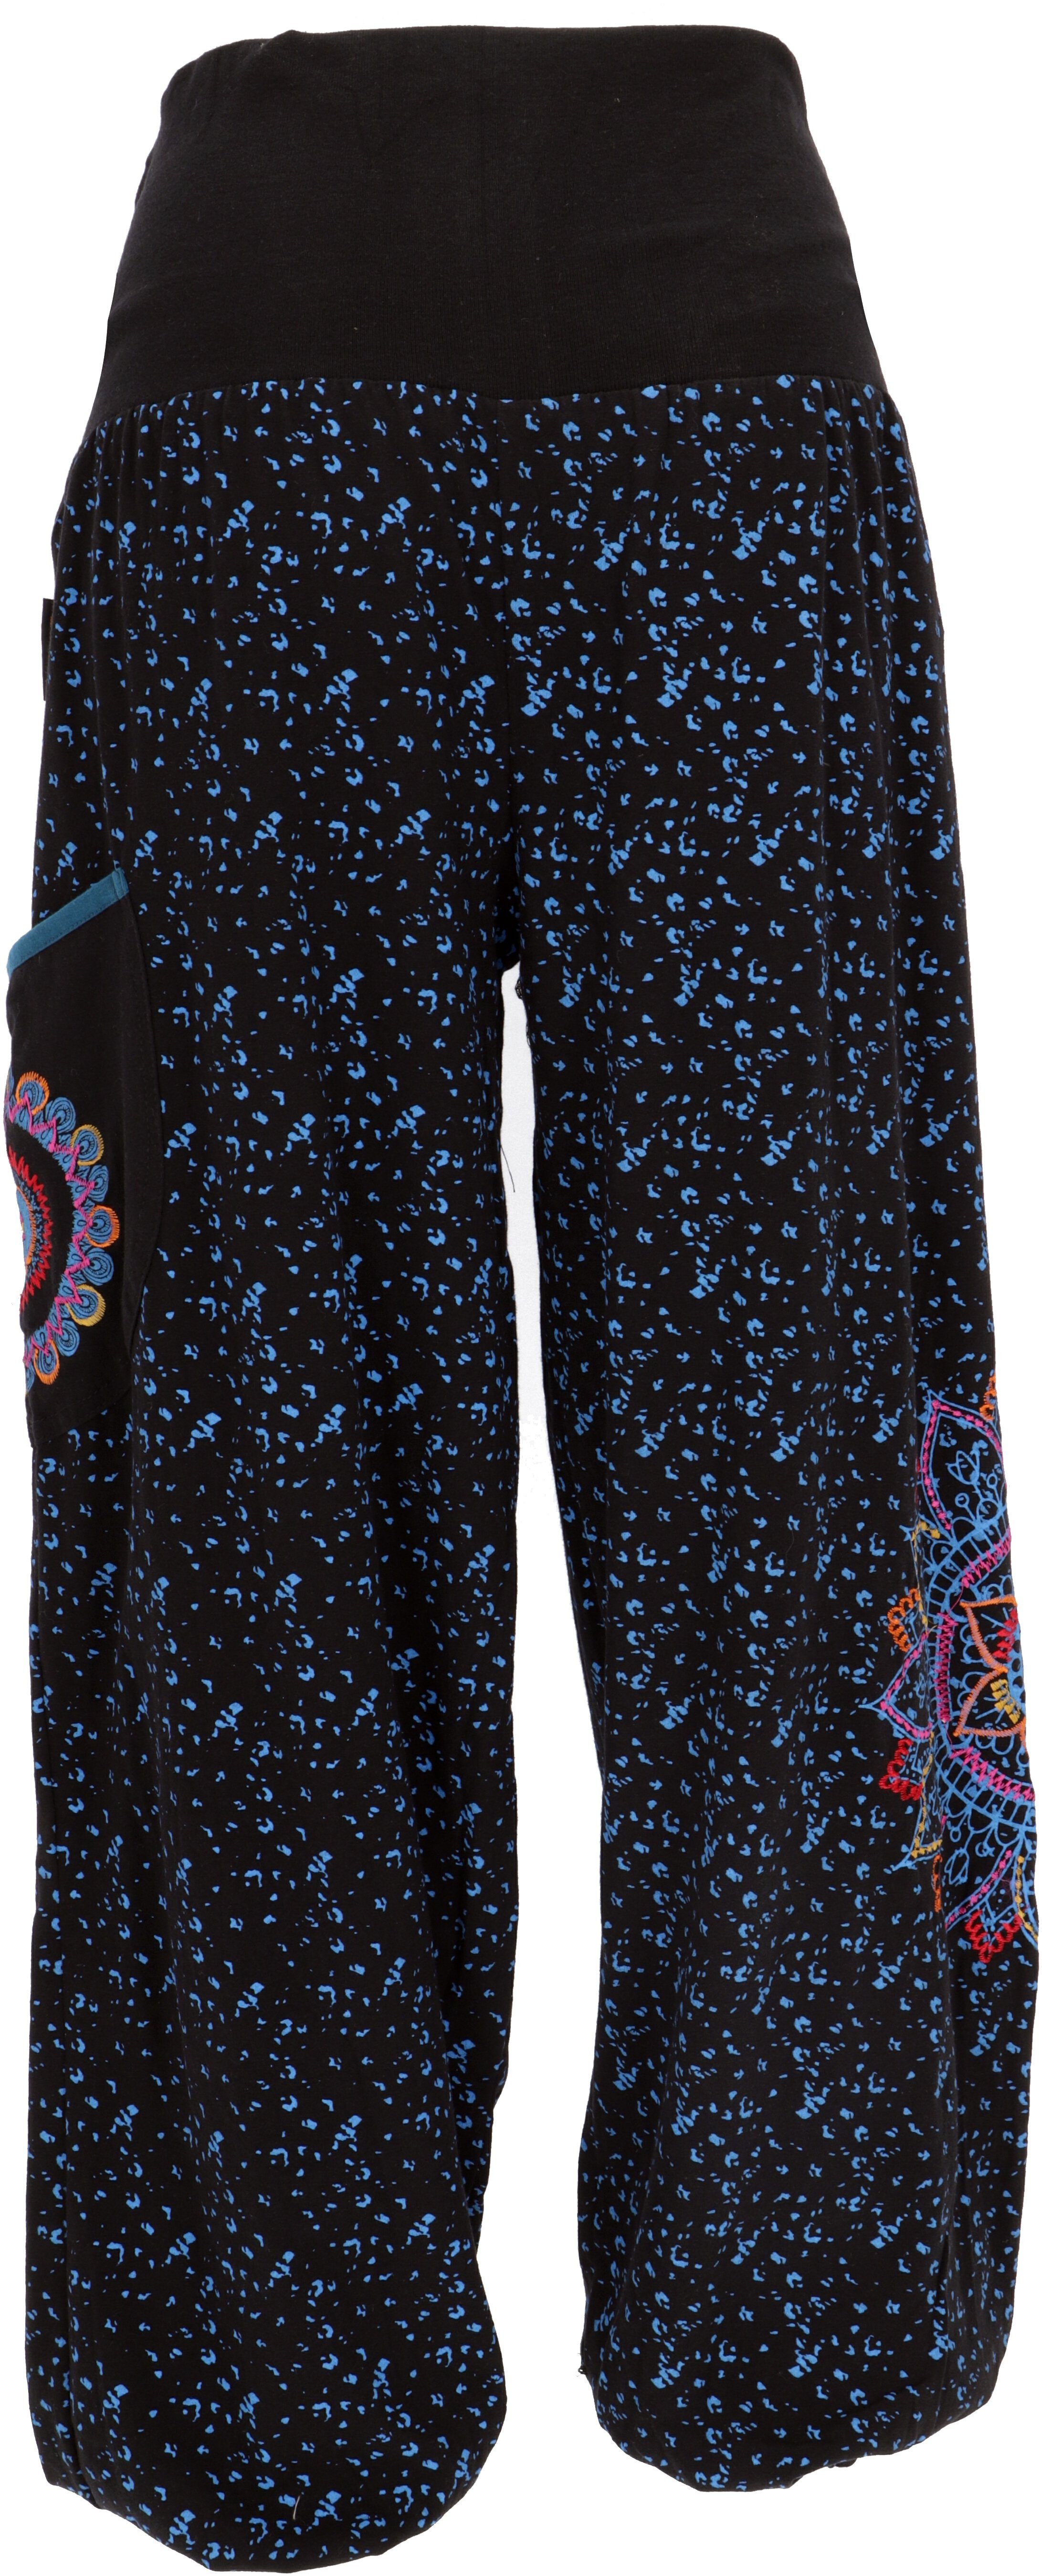 Guru-Shop Relaxhose Weite alternative Bekleidung Ethno Bund mit Pluderhose und.. schwarz/blau Style, breitem